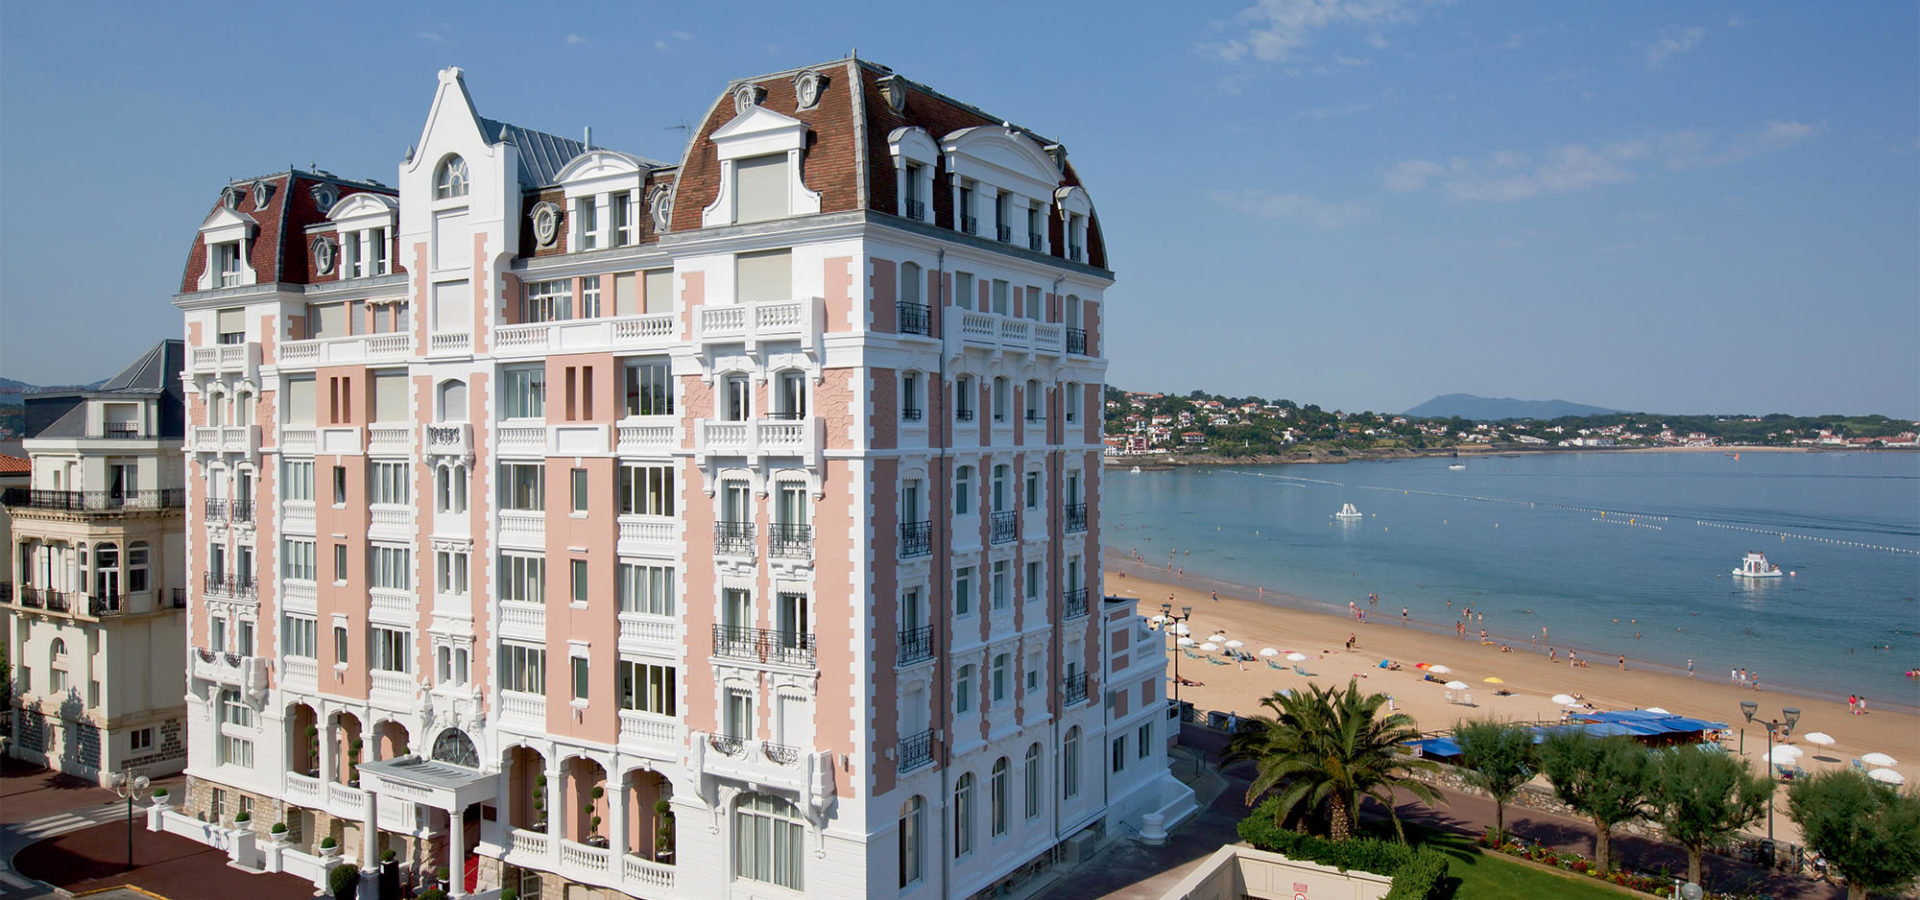 Grand Hotel Thalasso Spa 5 Saint Jean De Luz Basque Country